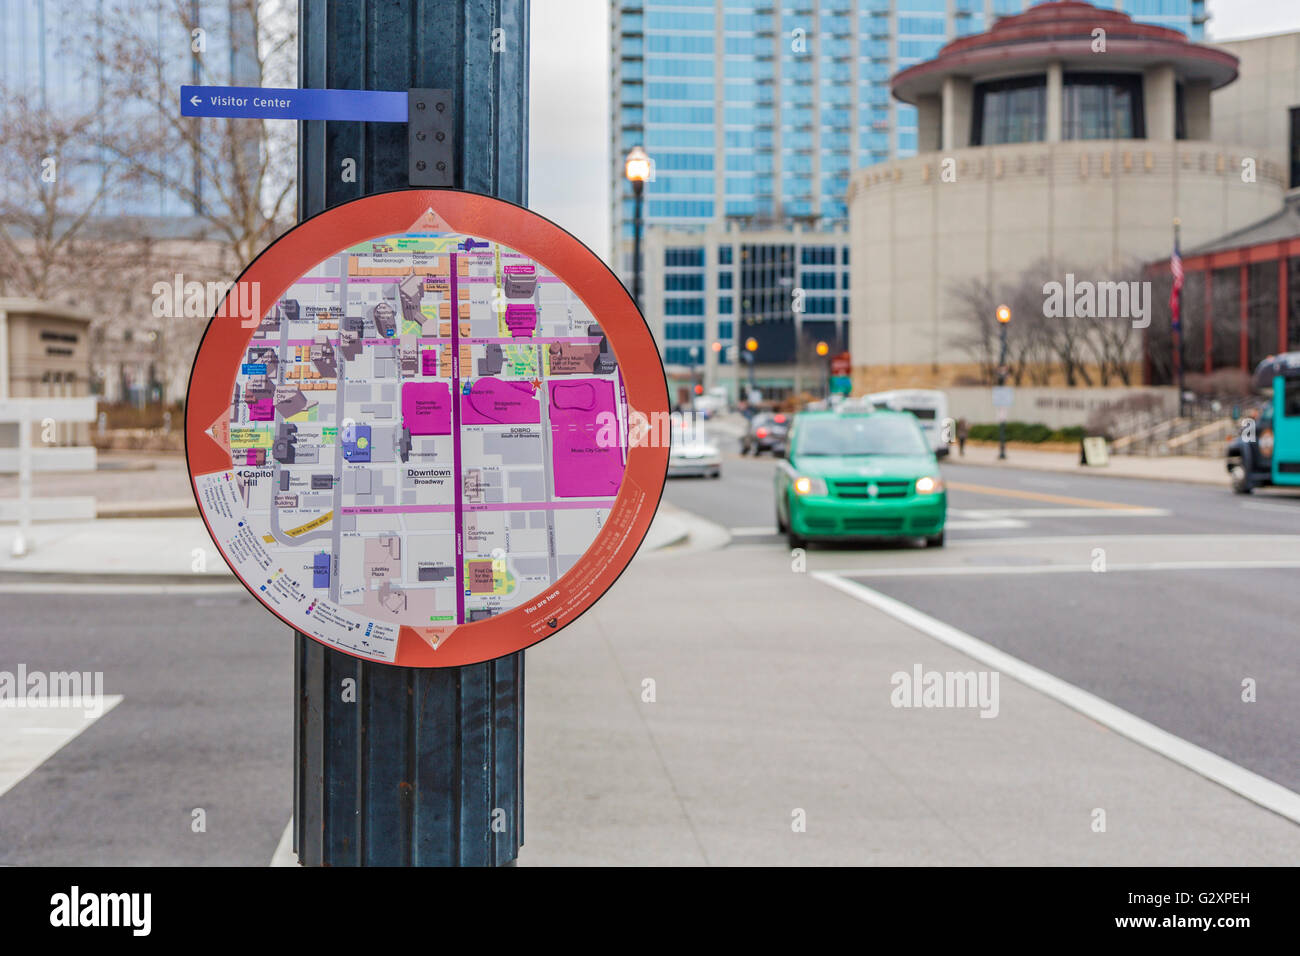 Detaillierte Karte und Verzeichnis hilft Touristen und Besucher finden ihren Weg durch die Innenstadt von Nashville, Tennessee Stockfoto